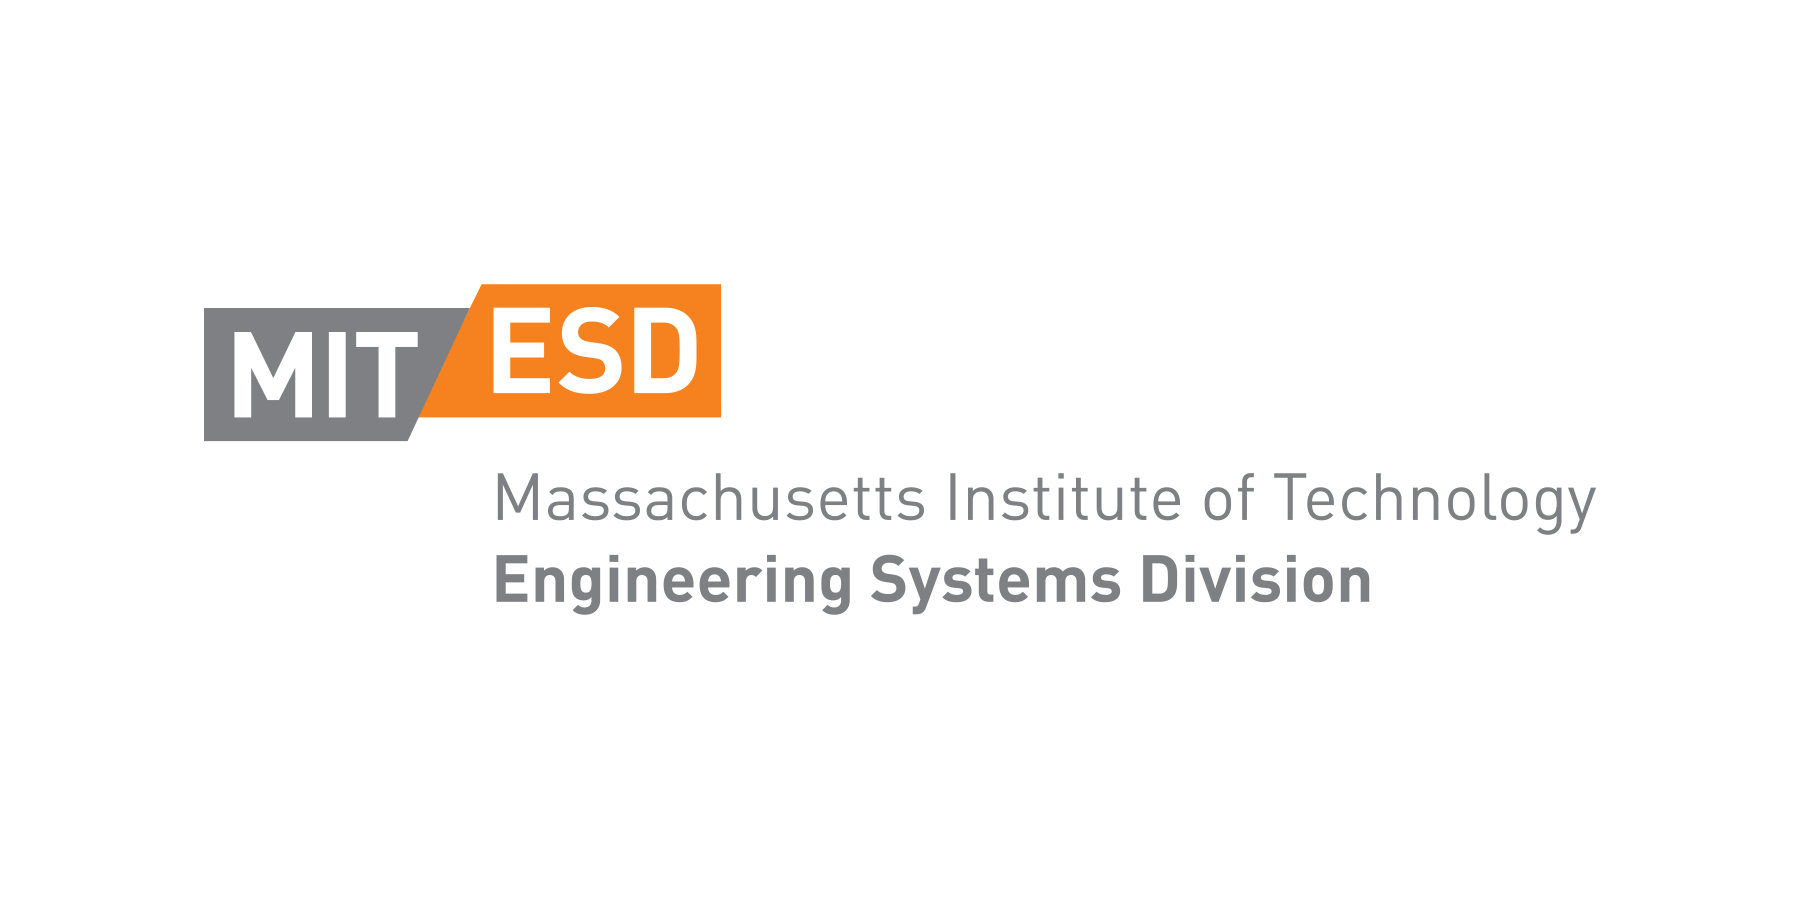 MIT-EST_logo